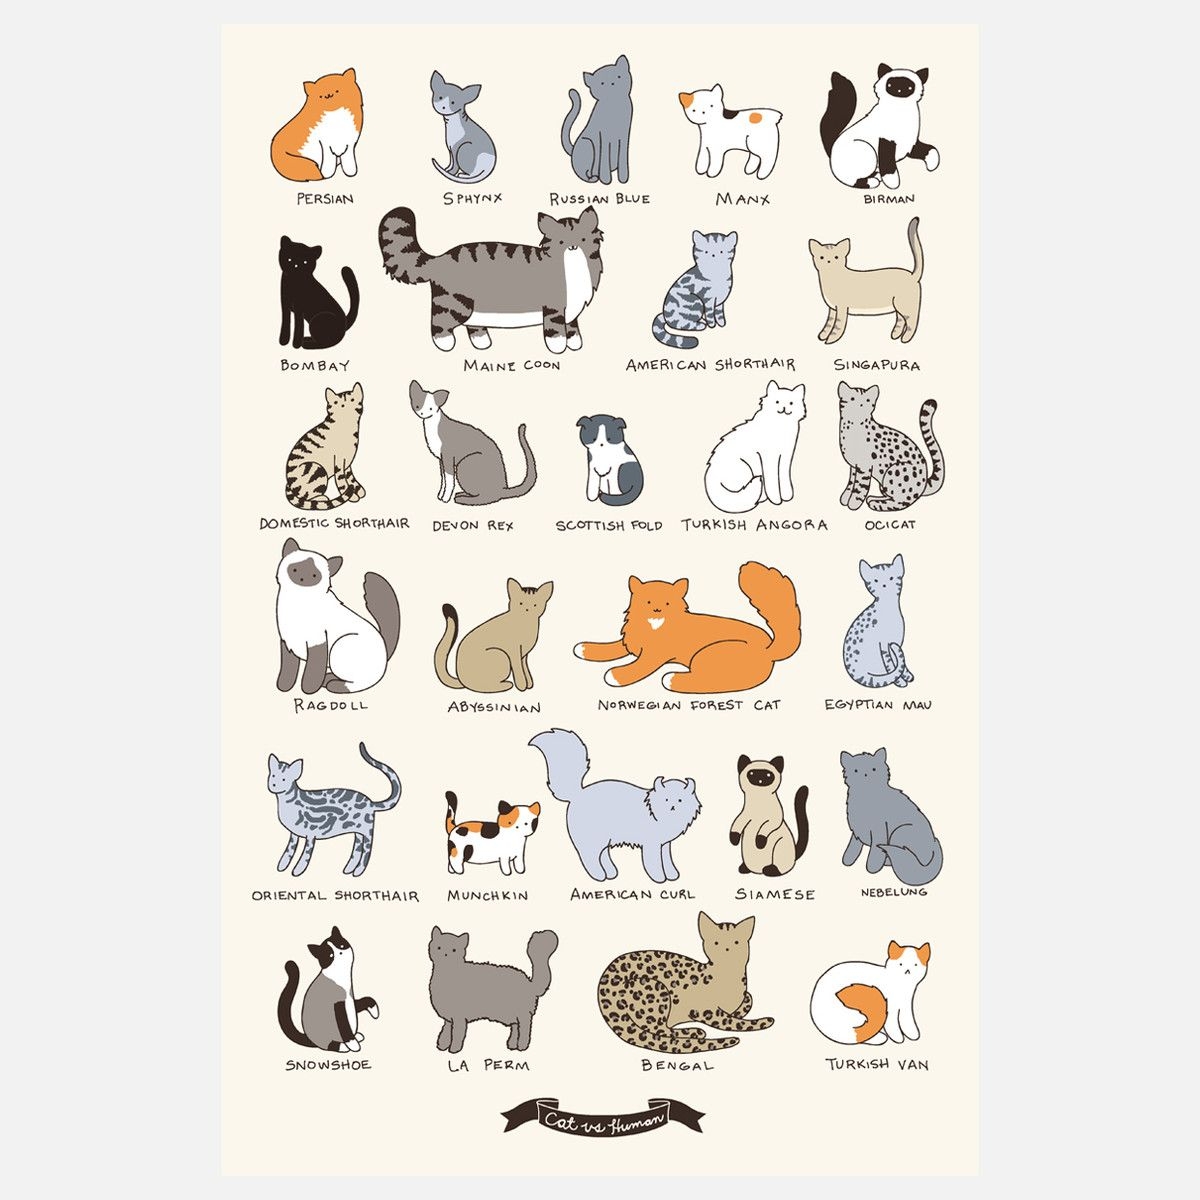 Найти породу кошки. Определитель породы кошек. Породы кошек плакат. Породы кошек рисунки и названия. Определи породу кота.